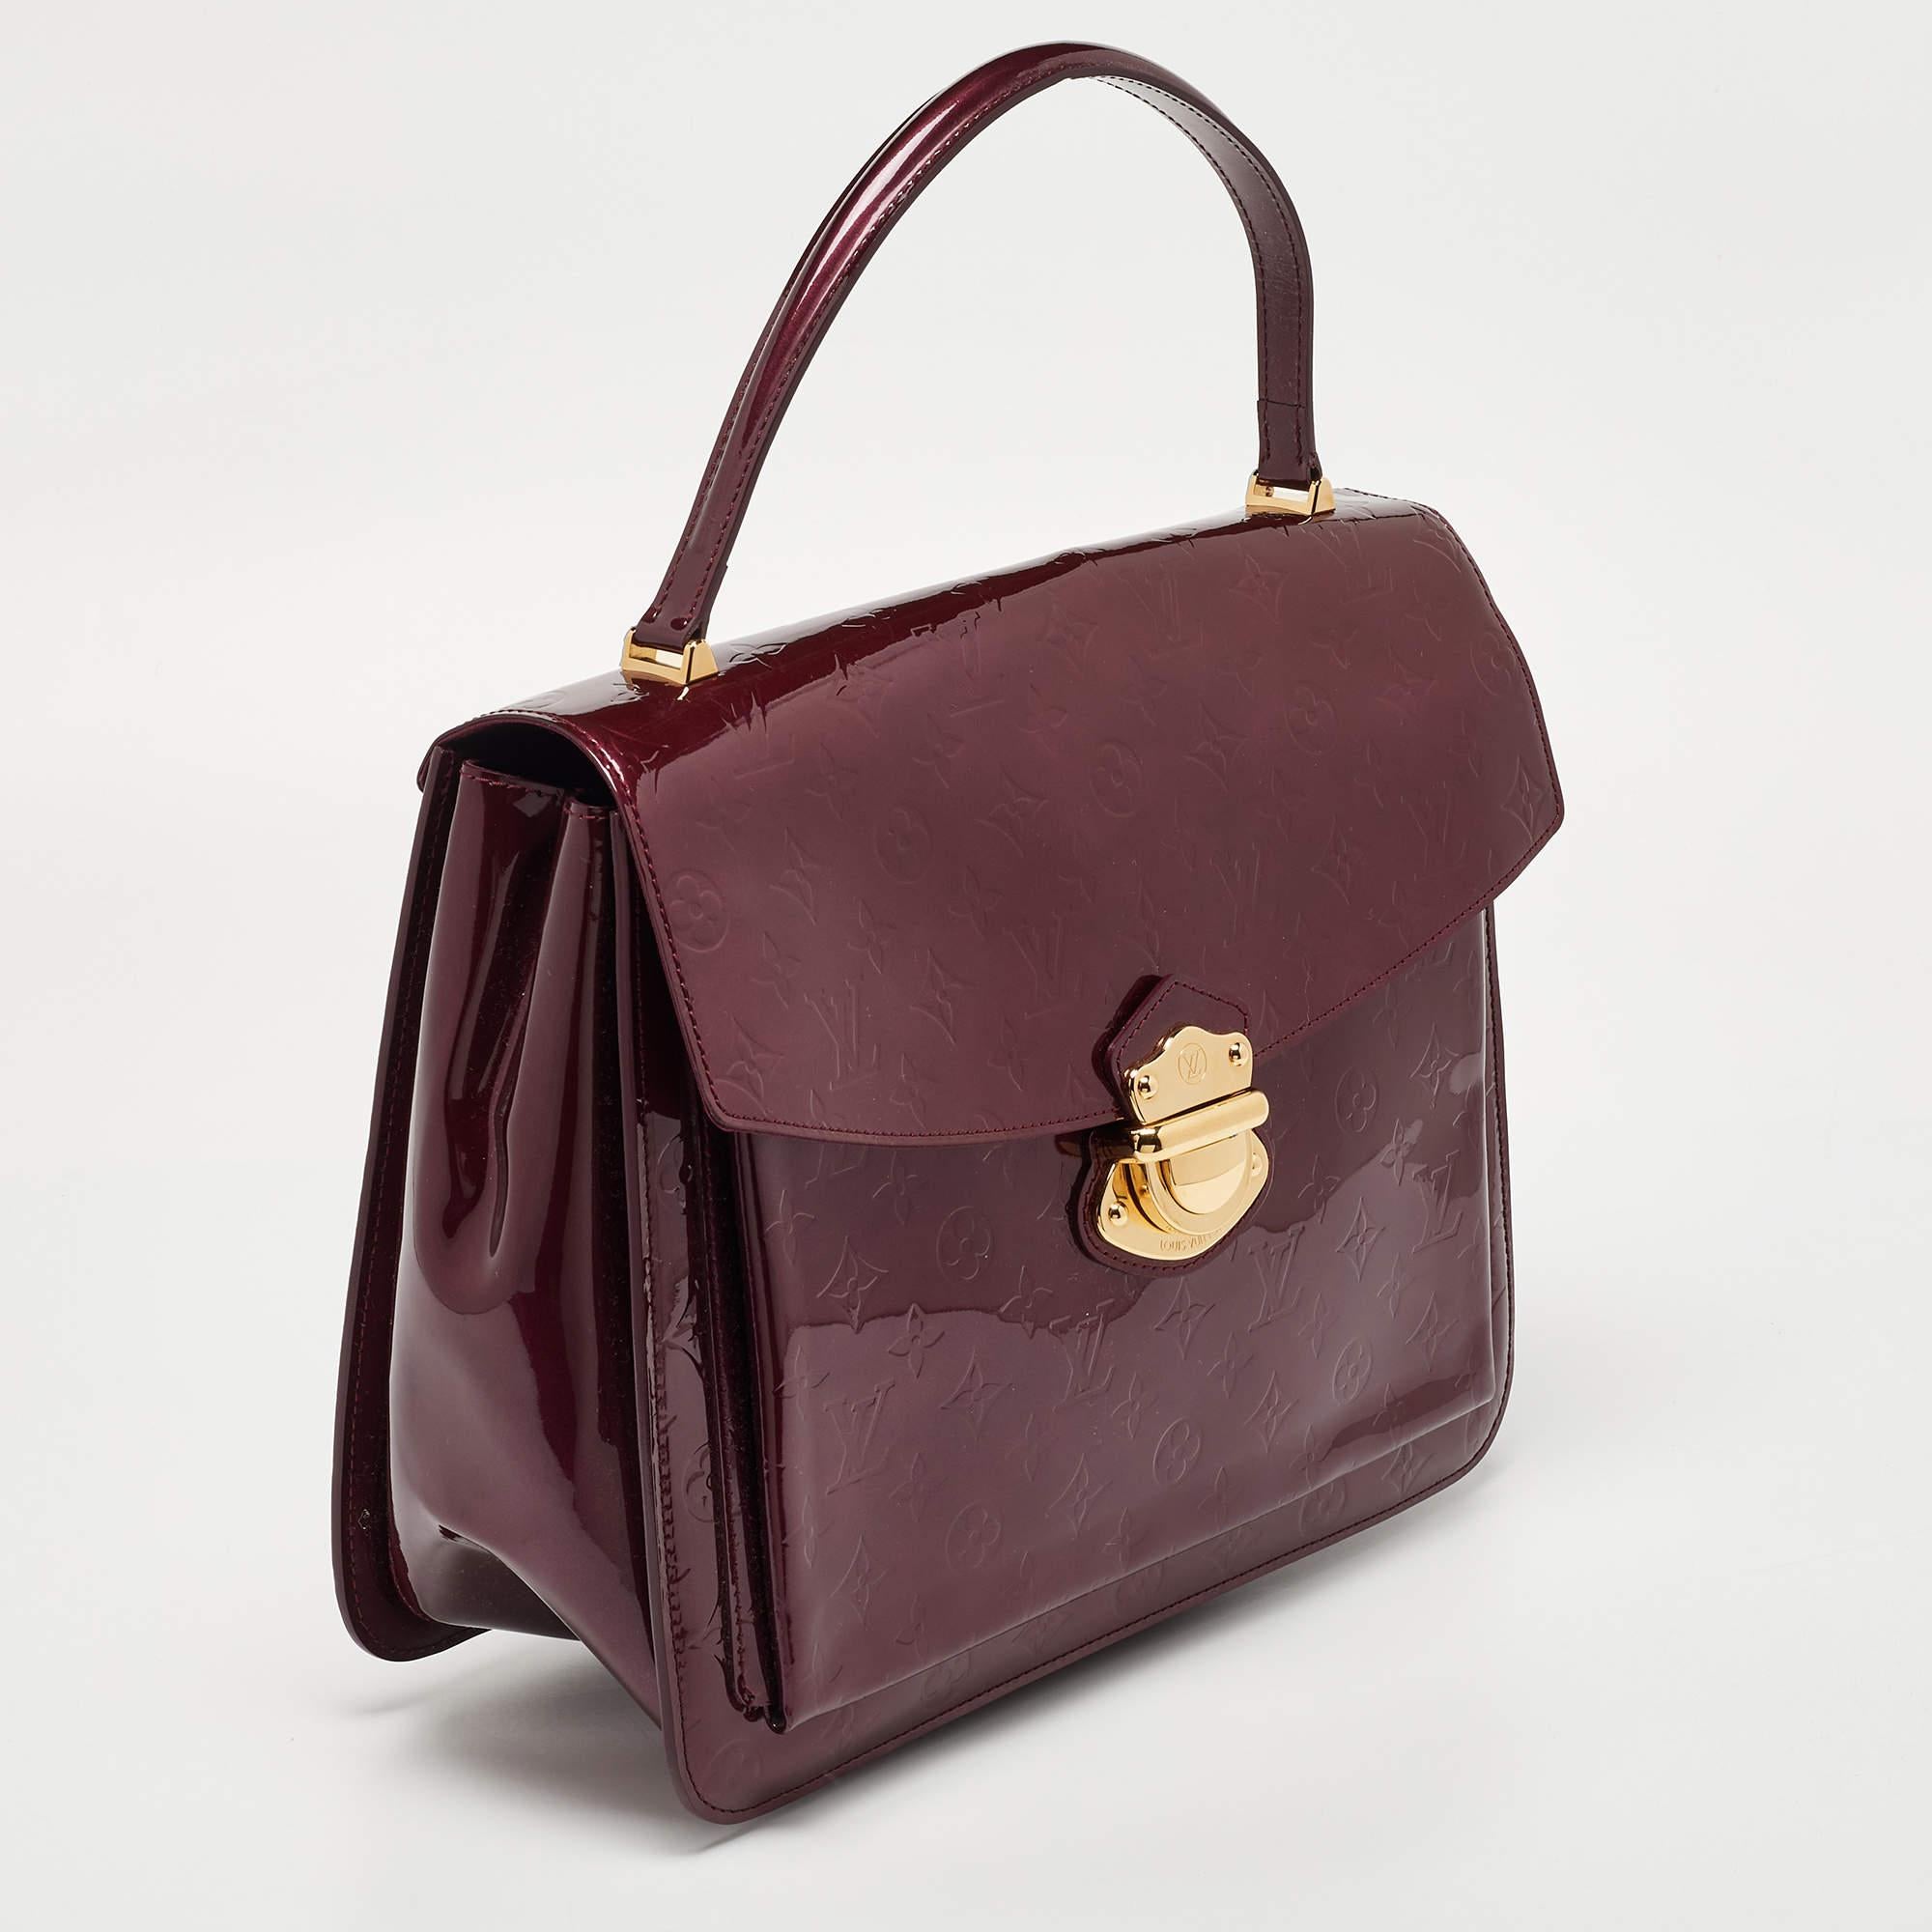 Louis Vuitton Amarante Monogram Vernis Mirada Bag In Good Condition For Sale In Dubai, Al Qouz 2